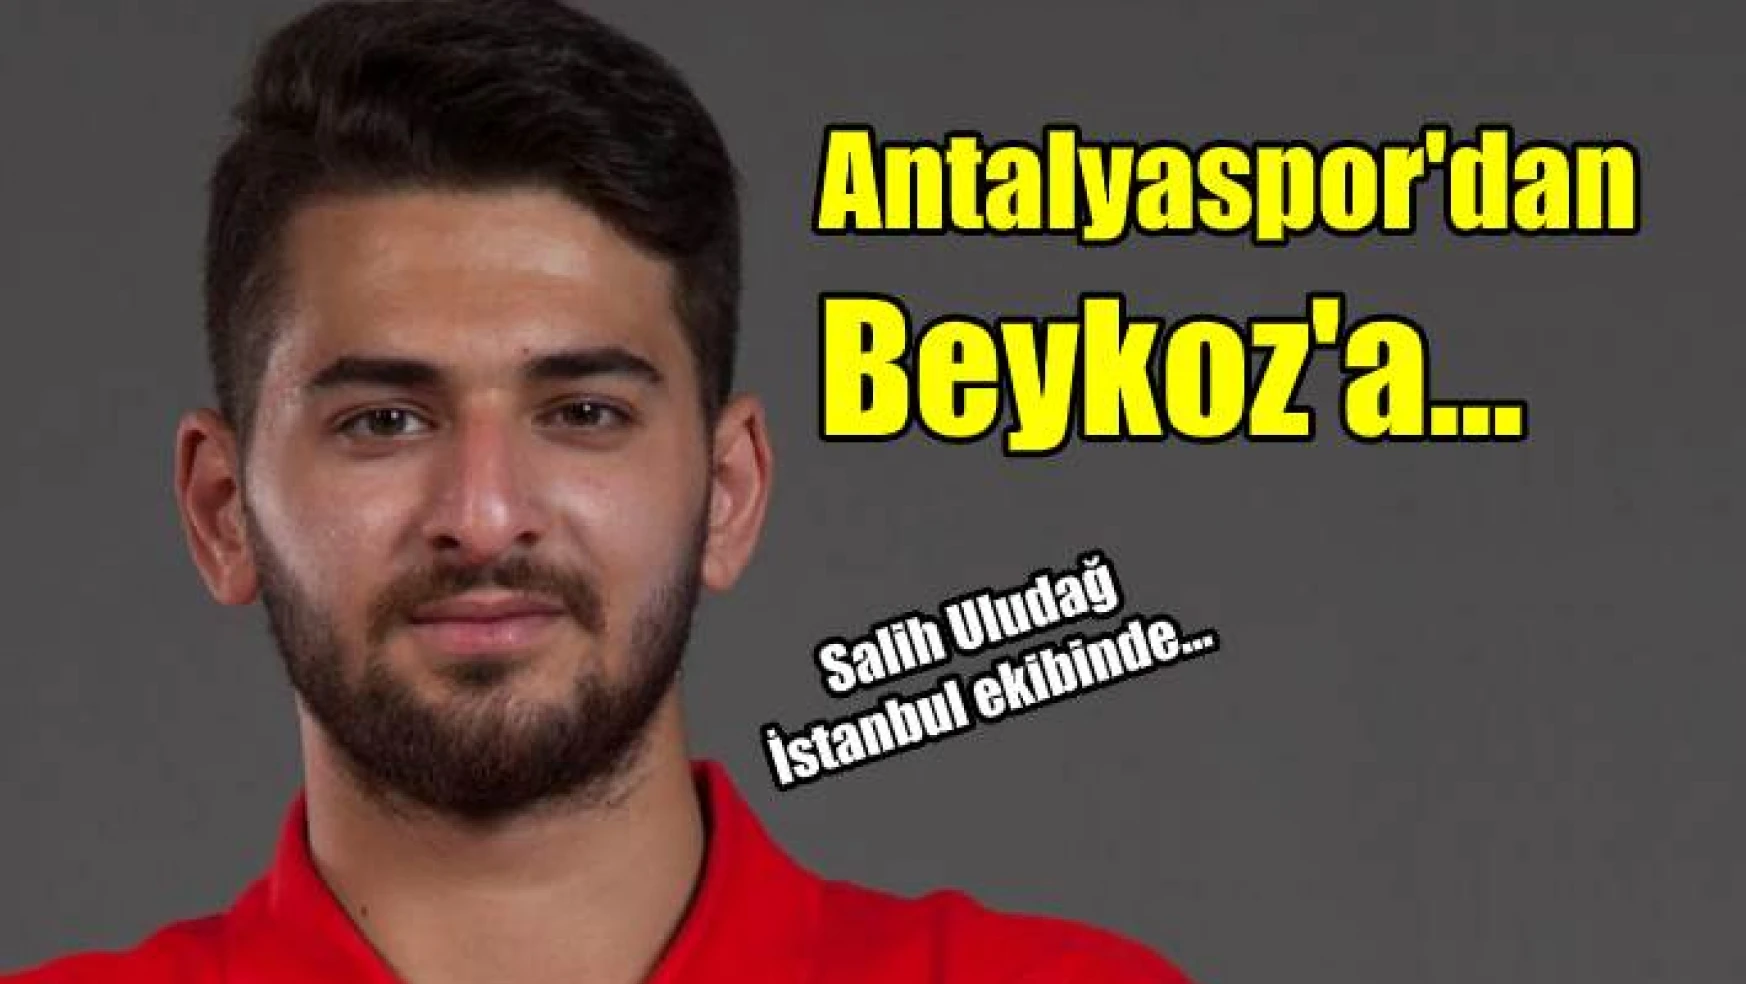 Antalyaspor’dan Beykoz’a…